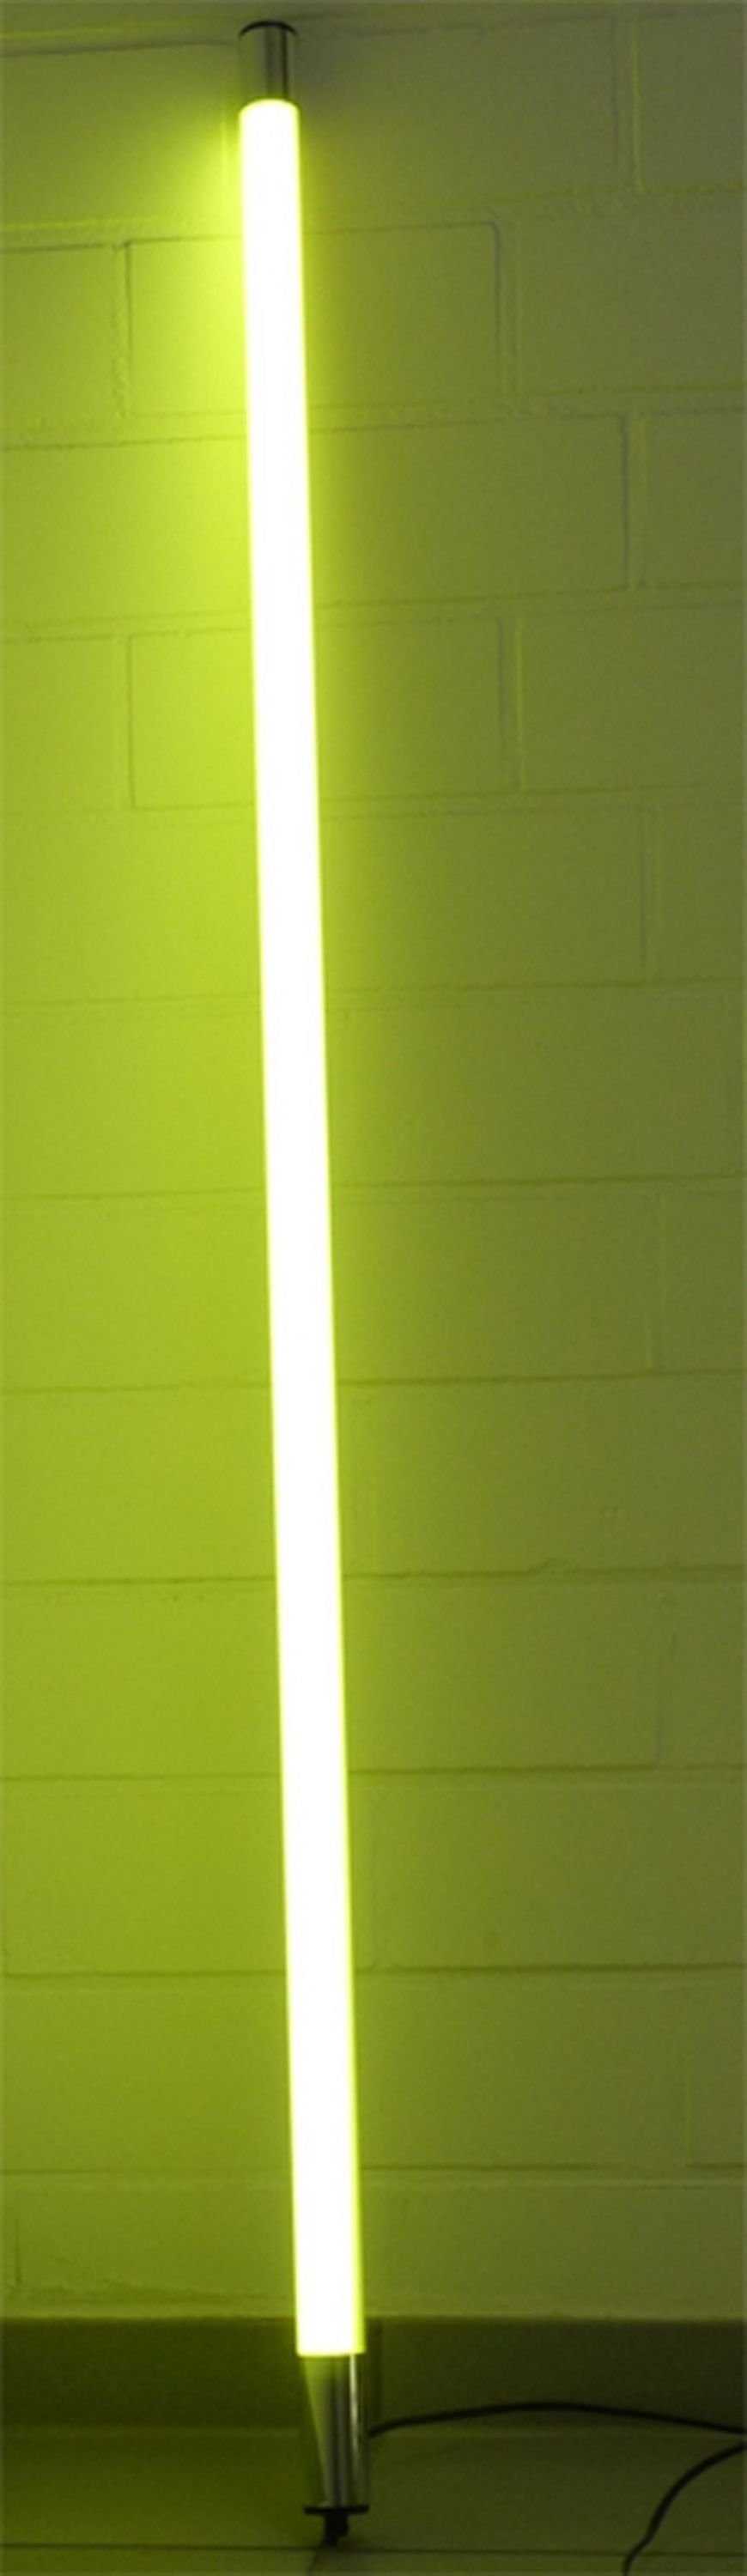 XENON LED Wandleuchte LED Leuchtstab Satiniert 1,23m Länge 1700 Lumen IP44 für Außen Gelb, LED Röhre T8, Xenon Gelb | Wandleuchten